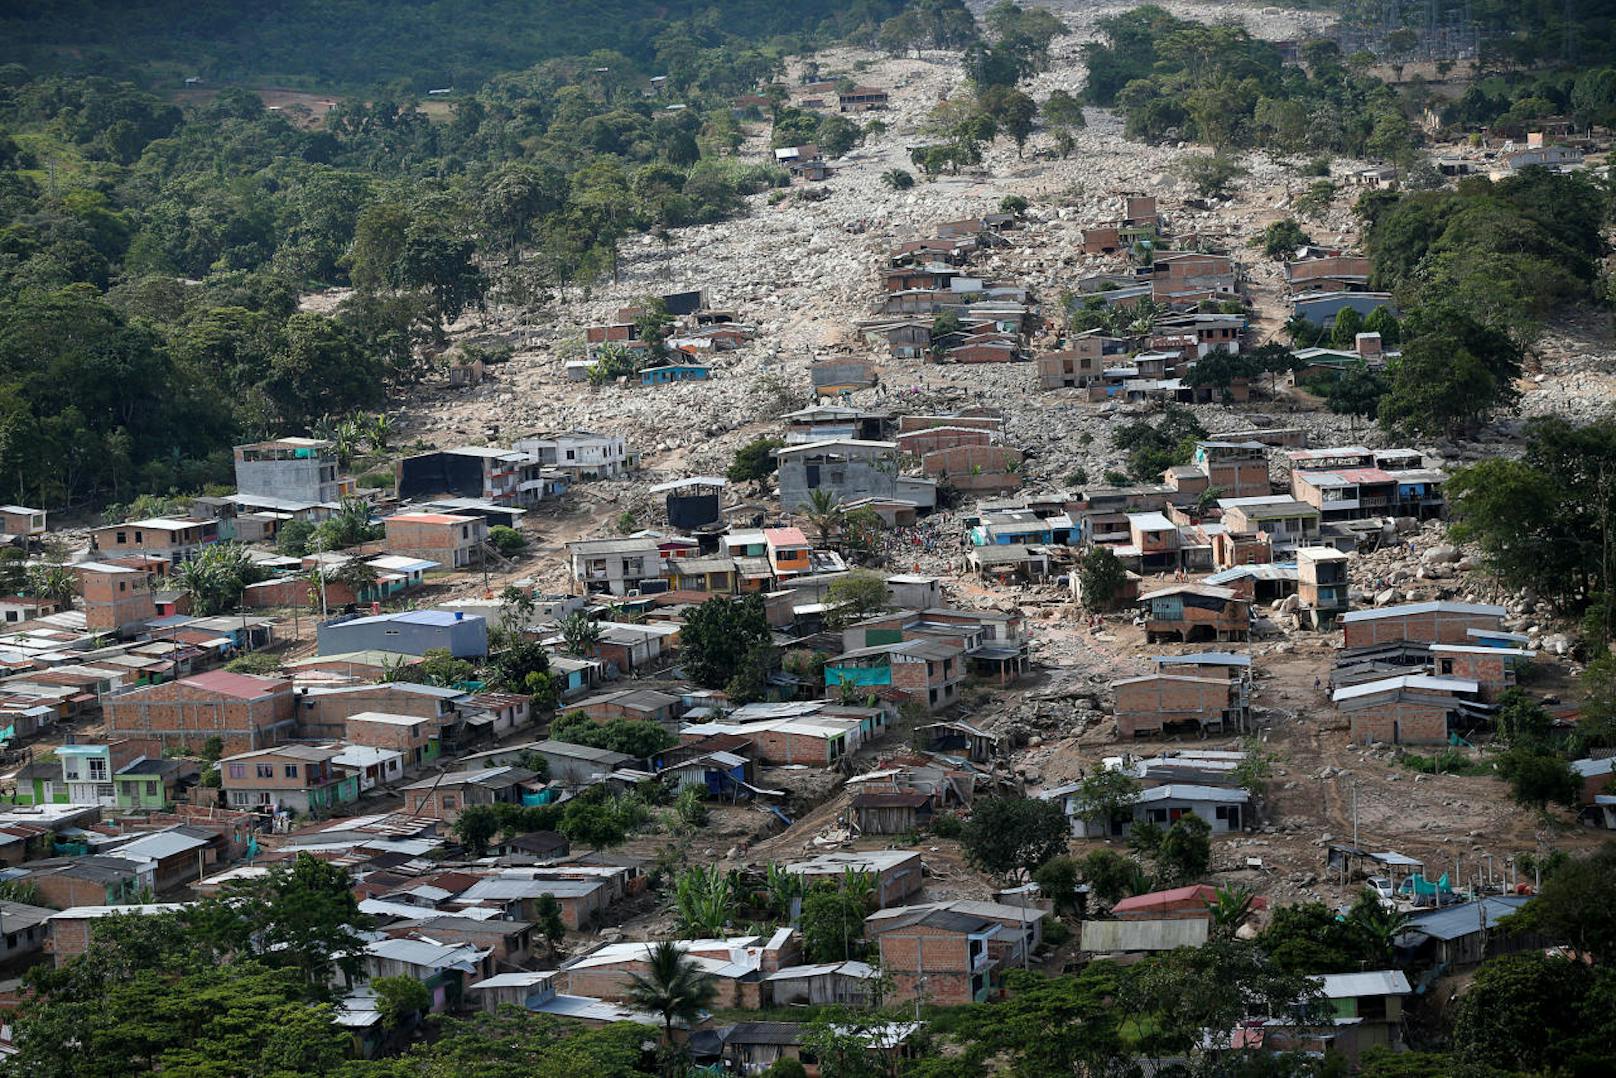 <b>31. März 2017:</b> <b>Schwere Überschwemmungen</b> haben die kolumbianische Stadt Mocoa verwüstet. Der gleichnamige Fluss der 40.000-Seelen-Gemeinde sowie drei Zuflüsse waren über die Ufer getreten. Die Wassermassen und Erdrutsche überraschten viele Bewohner im Schlaf. Mehr als 300 Todesopfer waren zu beklagen. 

<b>Mehr Infos: </b> <a href="https://www.heute.at/welt/news/story/Schlammlawine-in-Kolumbien---ber-300-Tote-59292759" target="_blank">Schlammlawine in Kolumbien- über 300 Tote</a>